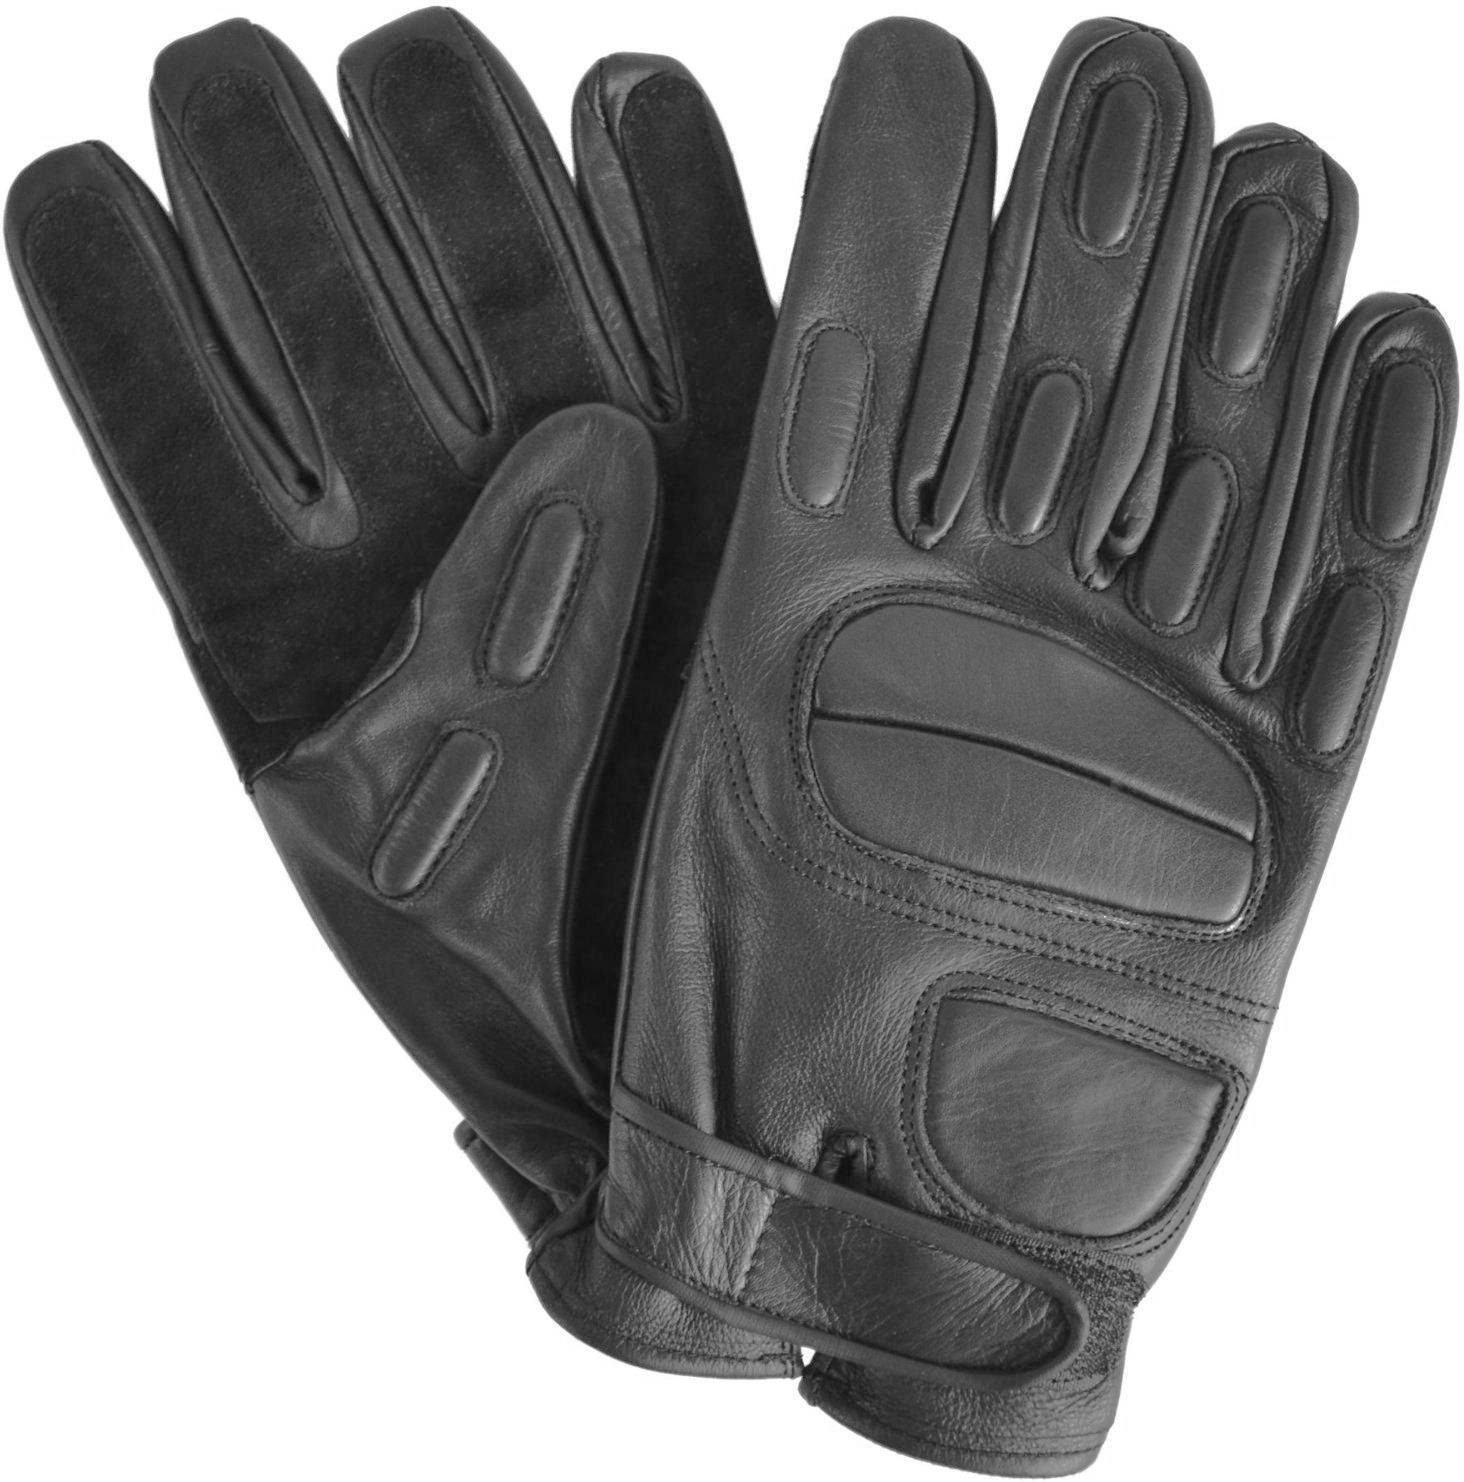 - Kevlarfutter normani Protektoren mit und Operator Lederhandschuhe Multisporthandschuhe schnitthemmend - Combat-Handschuhe